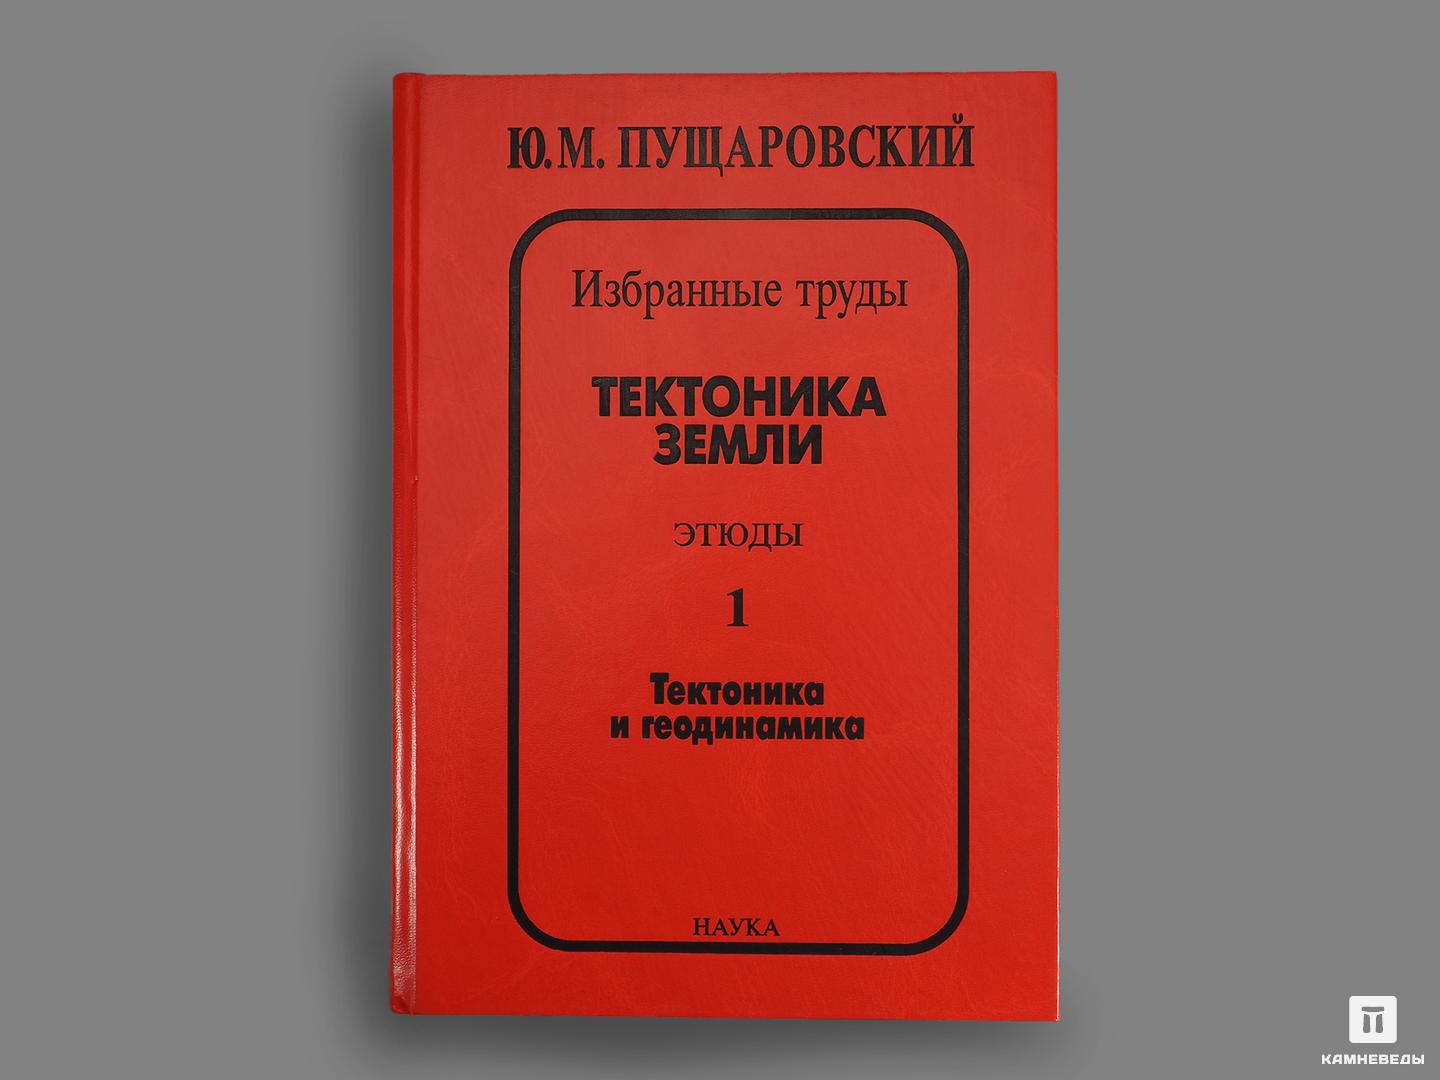 Книга: Ю. М. Пущаровский «Тектоника Земли. Этюды.» 1 и 2 том наука не скука